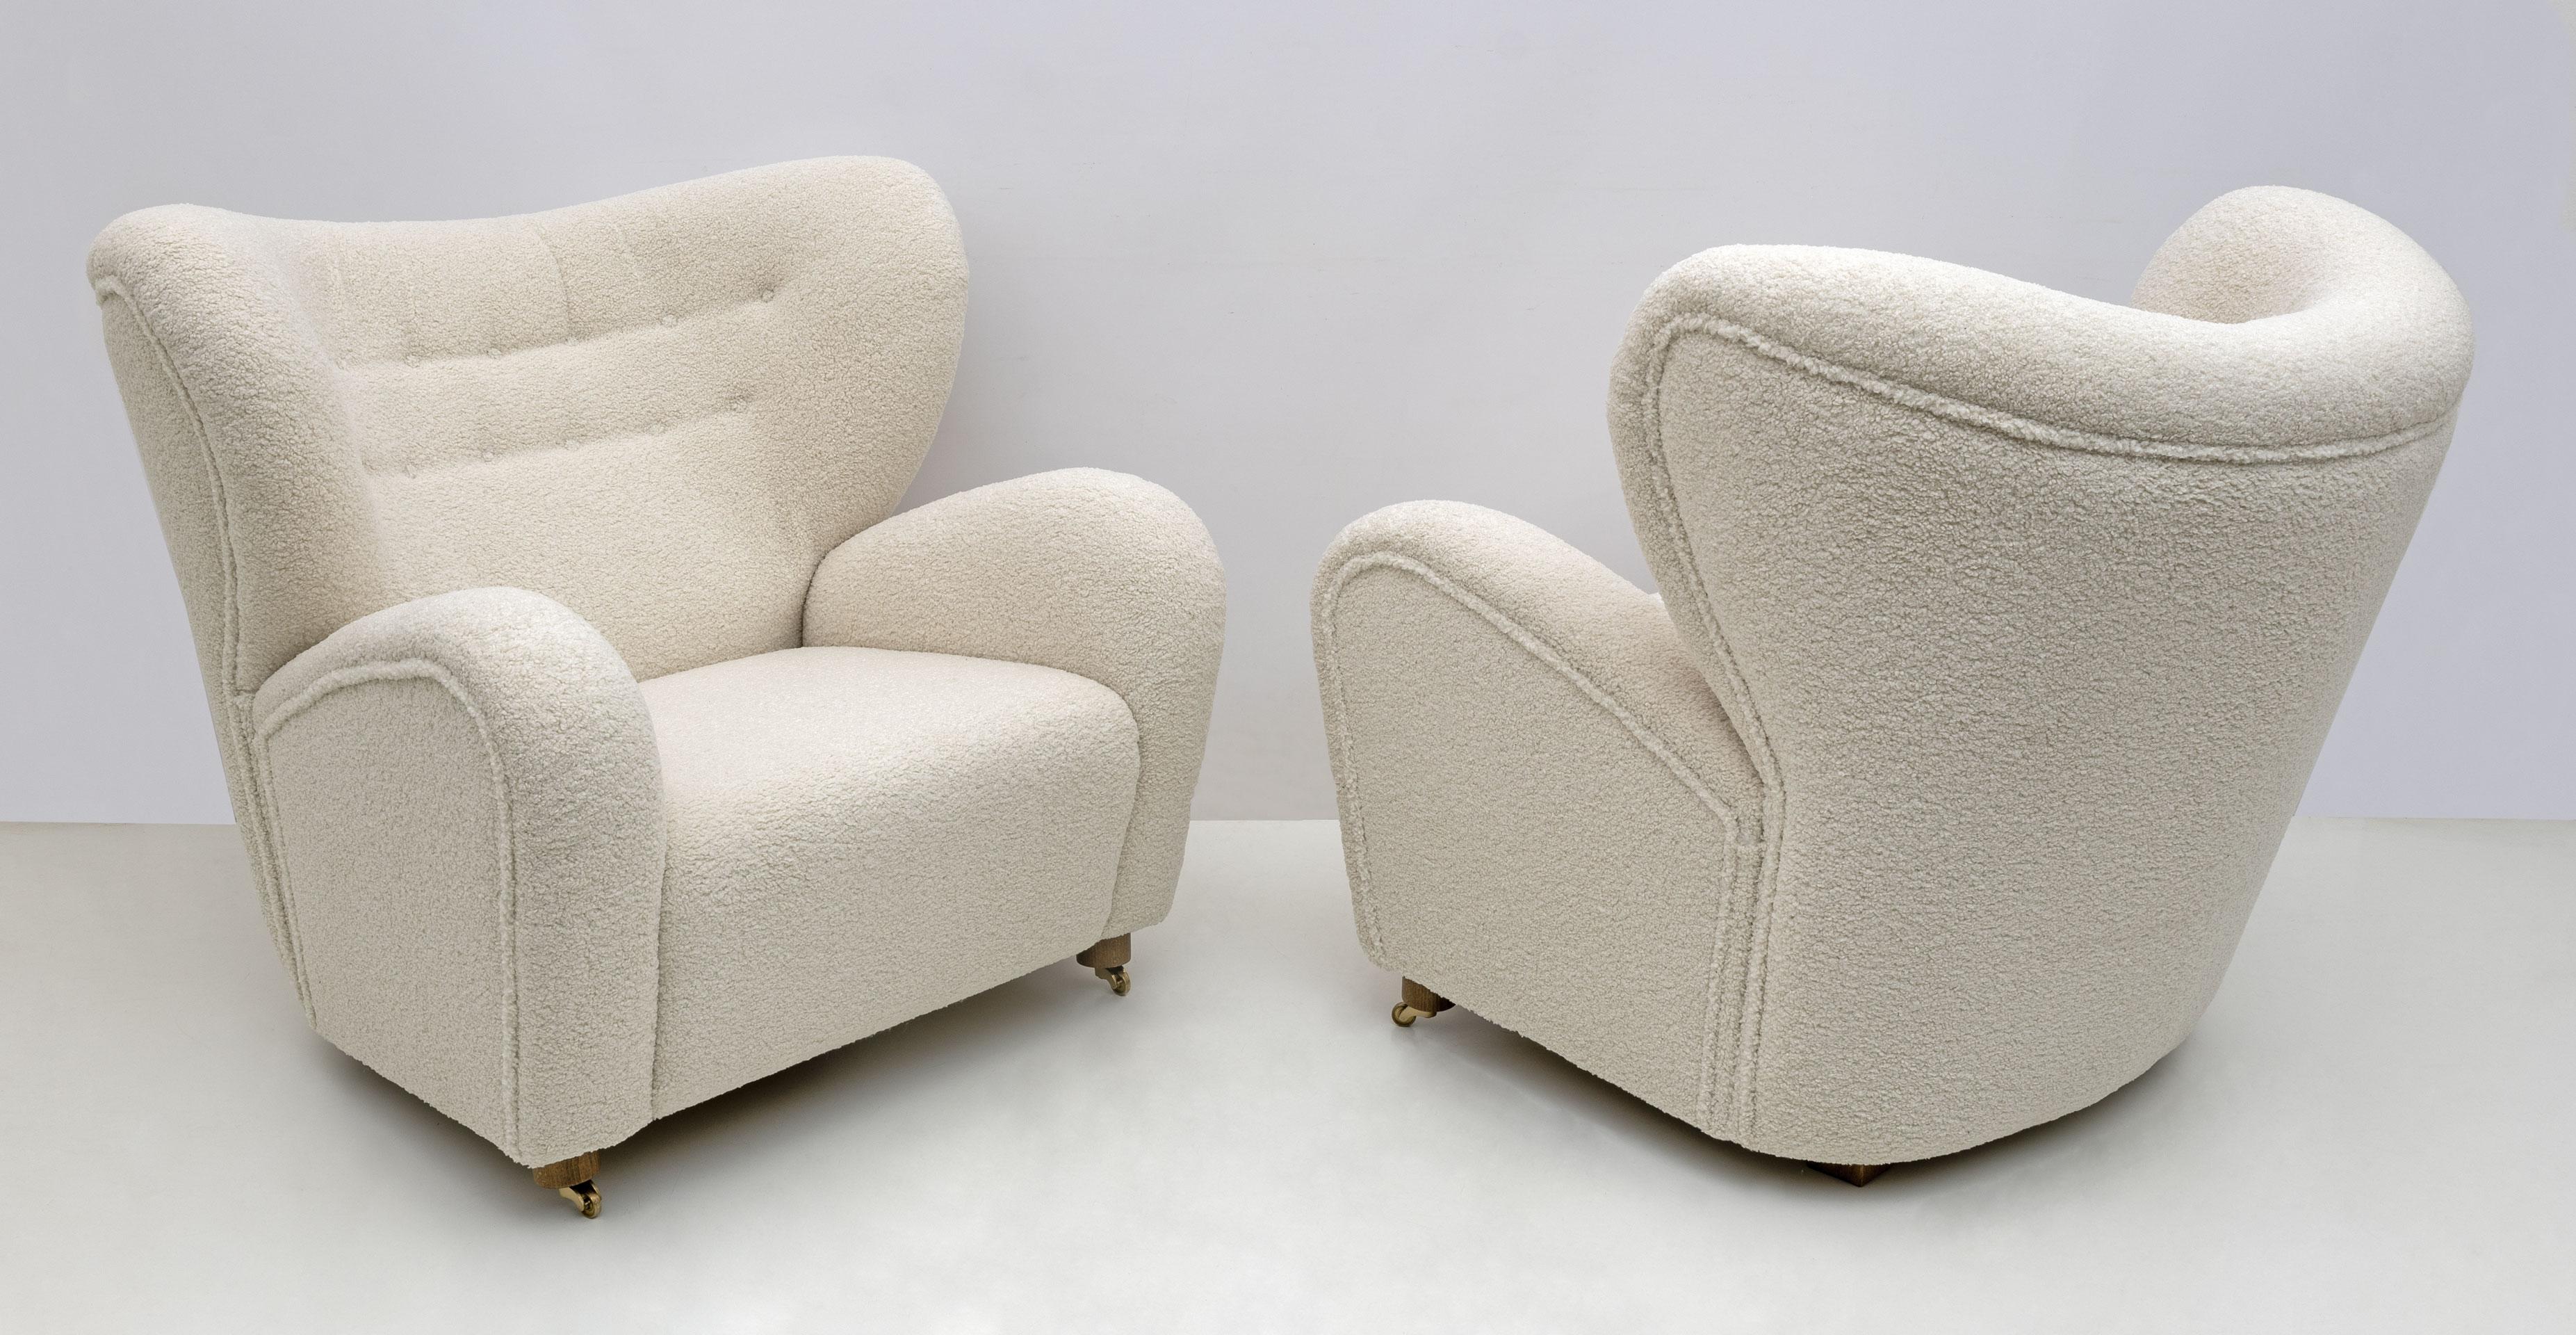 Set aus 2 beigen Sahco Zero The Tired Man Sesseln von Lassen. Flemming Lassen entwarf 1935 den gepolsterten Sessel Stanco für den Wettbewerb der Kopenhagener Tischlergilde. Er zeichnet sich durch organische, bärenartige Formen aus und erregte damals